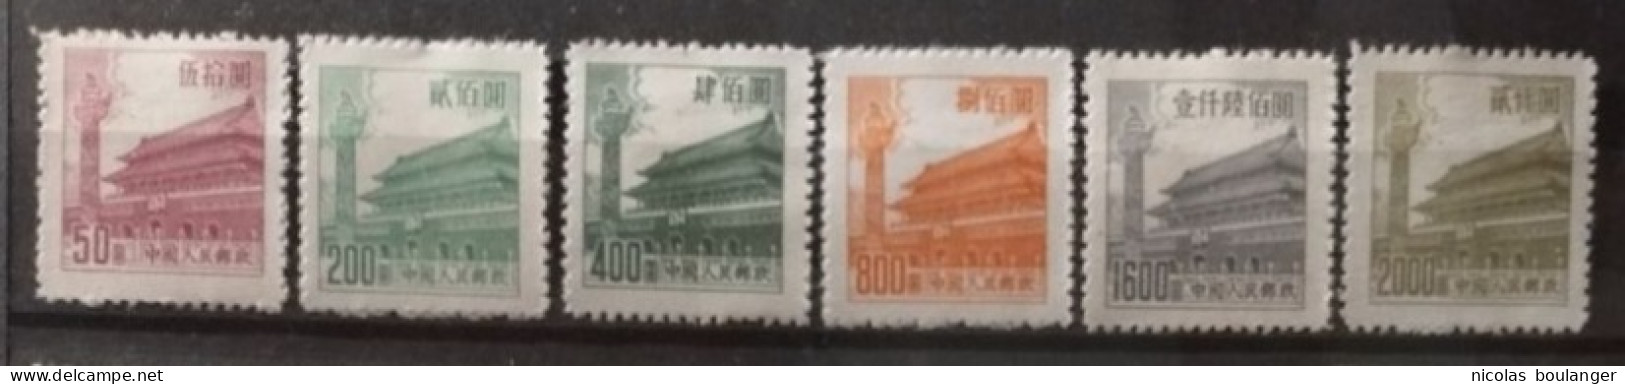 Chine 1954 / Yvert N°1008-1015 / * (sans Gomme) - Unused Stamps